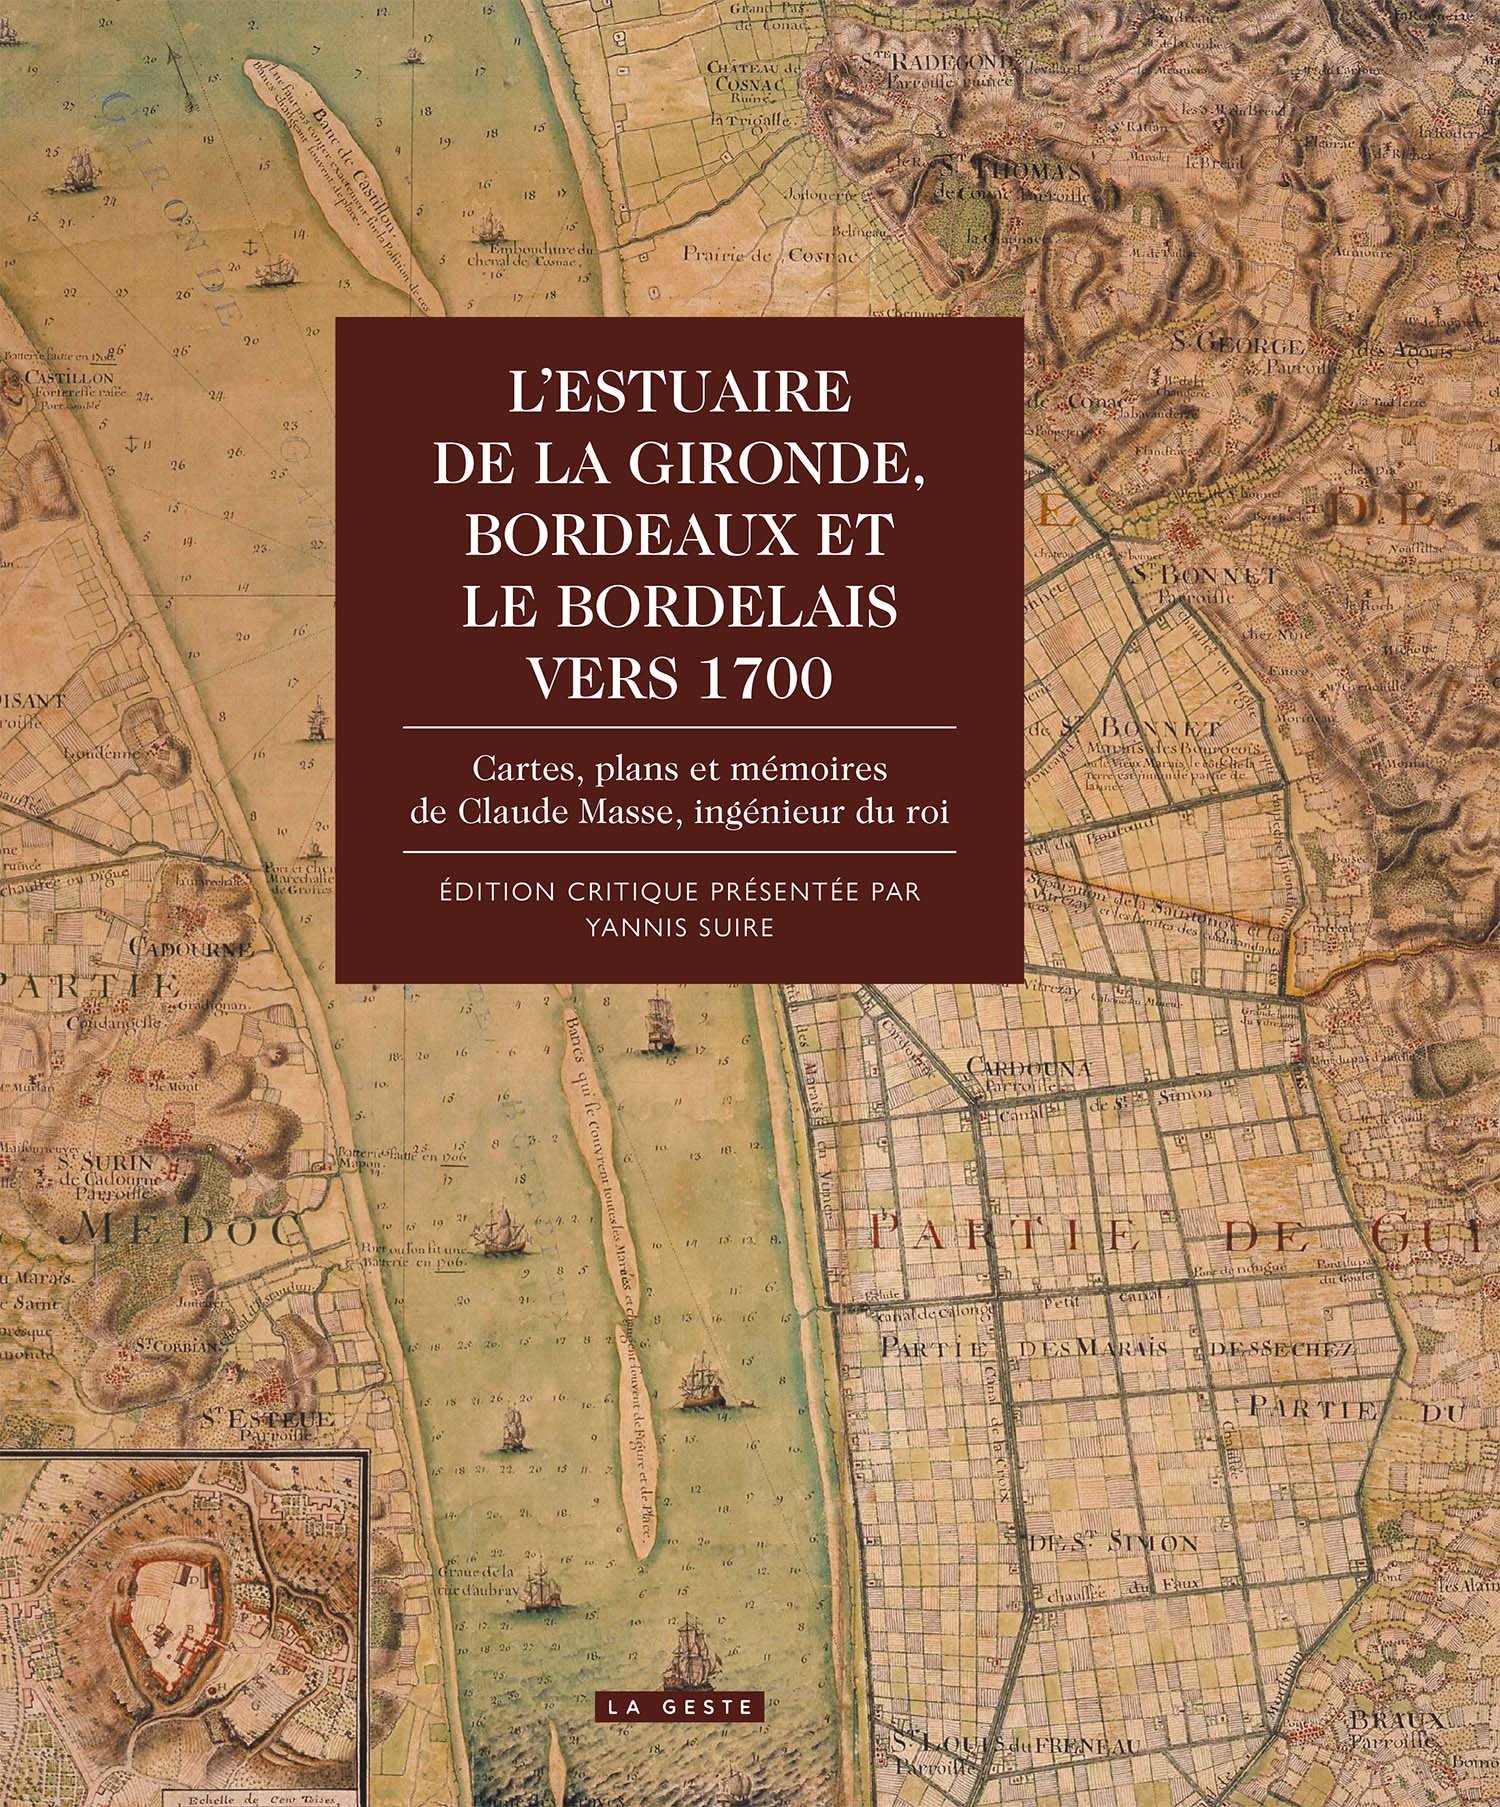 L'Estuaire de la Gironde. Bordeaux et le Bordelais vers 1700. Cartes, plans et mémoires de Claude Masse, ingénieur du roi, 2017, 472 p.